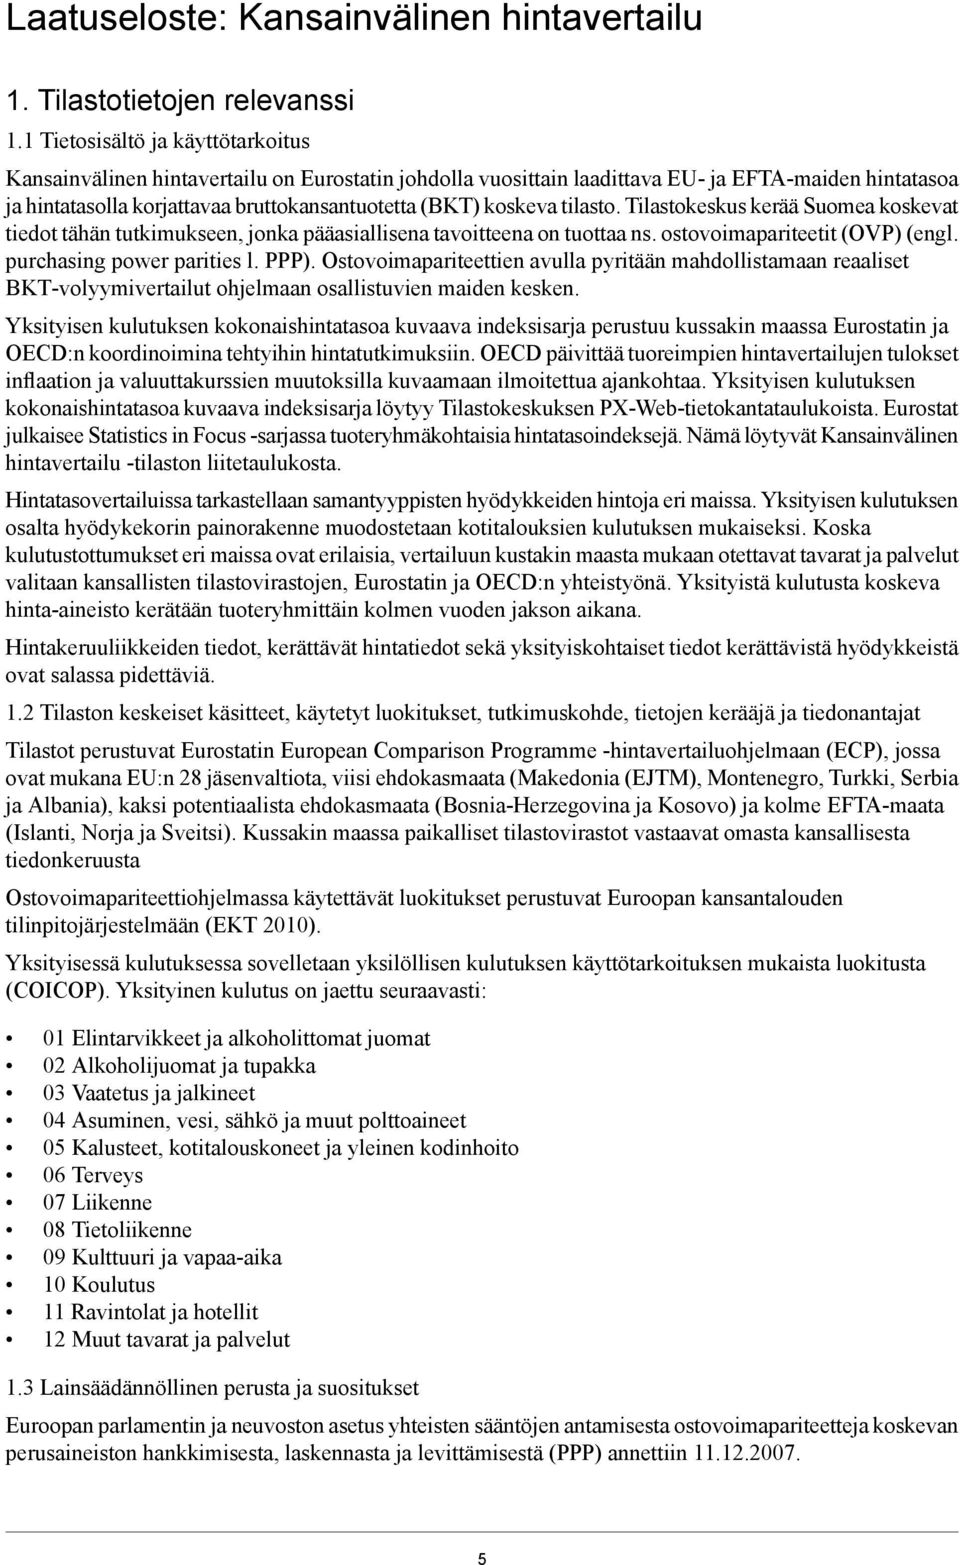 koskeva tilasto. Tilastokeskus kerää Suomea koskevat tiedot tähän tutkimukseen, jonka pääasiallisena tavoitteena on tuottaa ns. ostovoimapariteetit (OVP) (engl. purchasing power parities l. PPP).